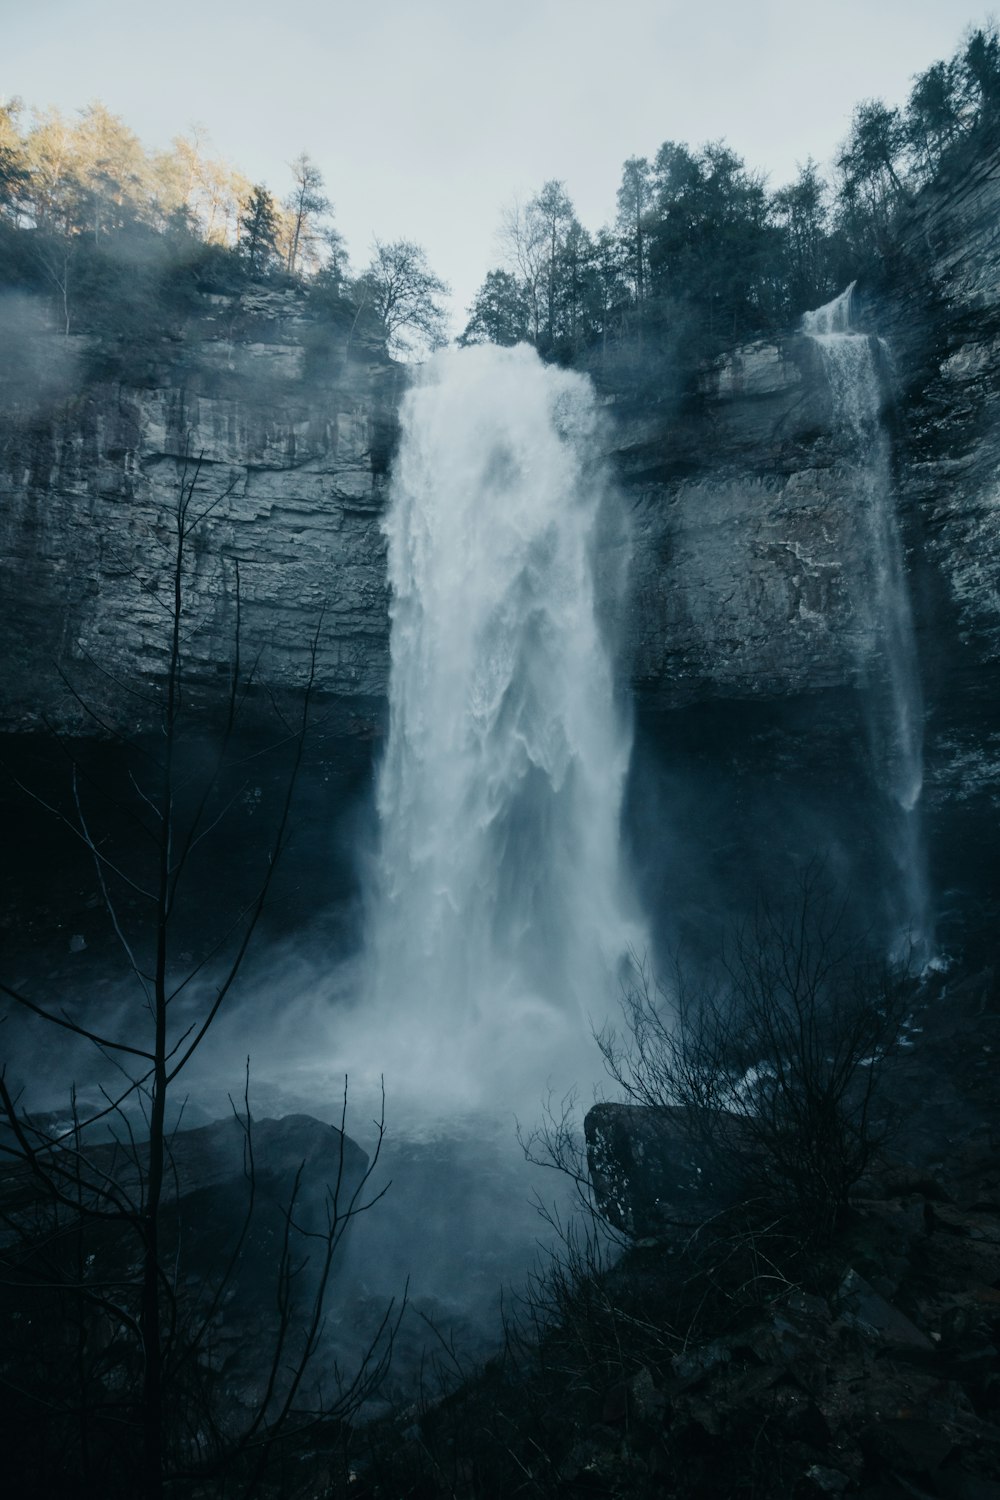 Zeitrafferfotografie von Wasserfällen unter weißen Wolken